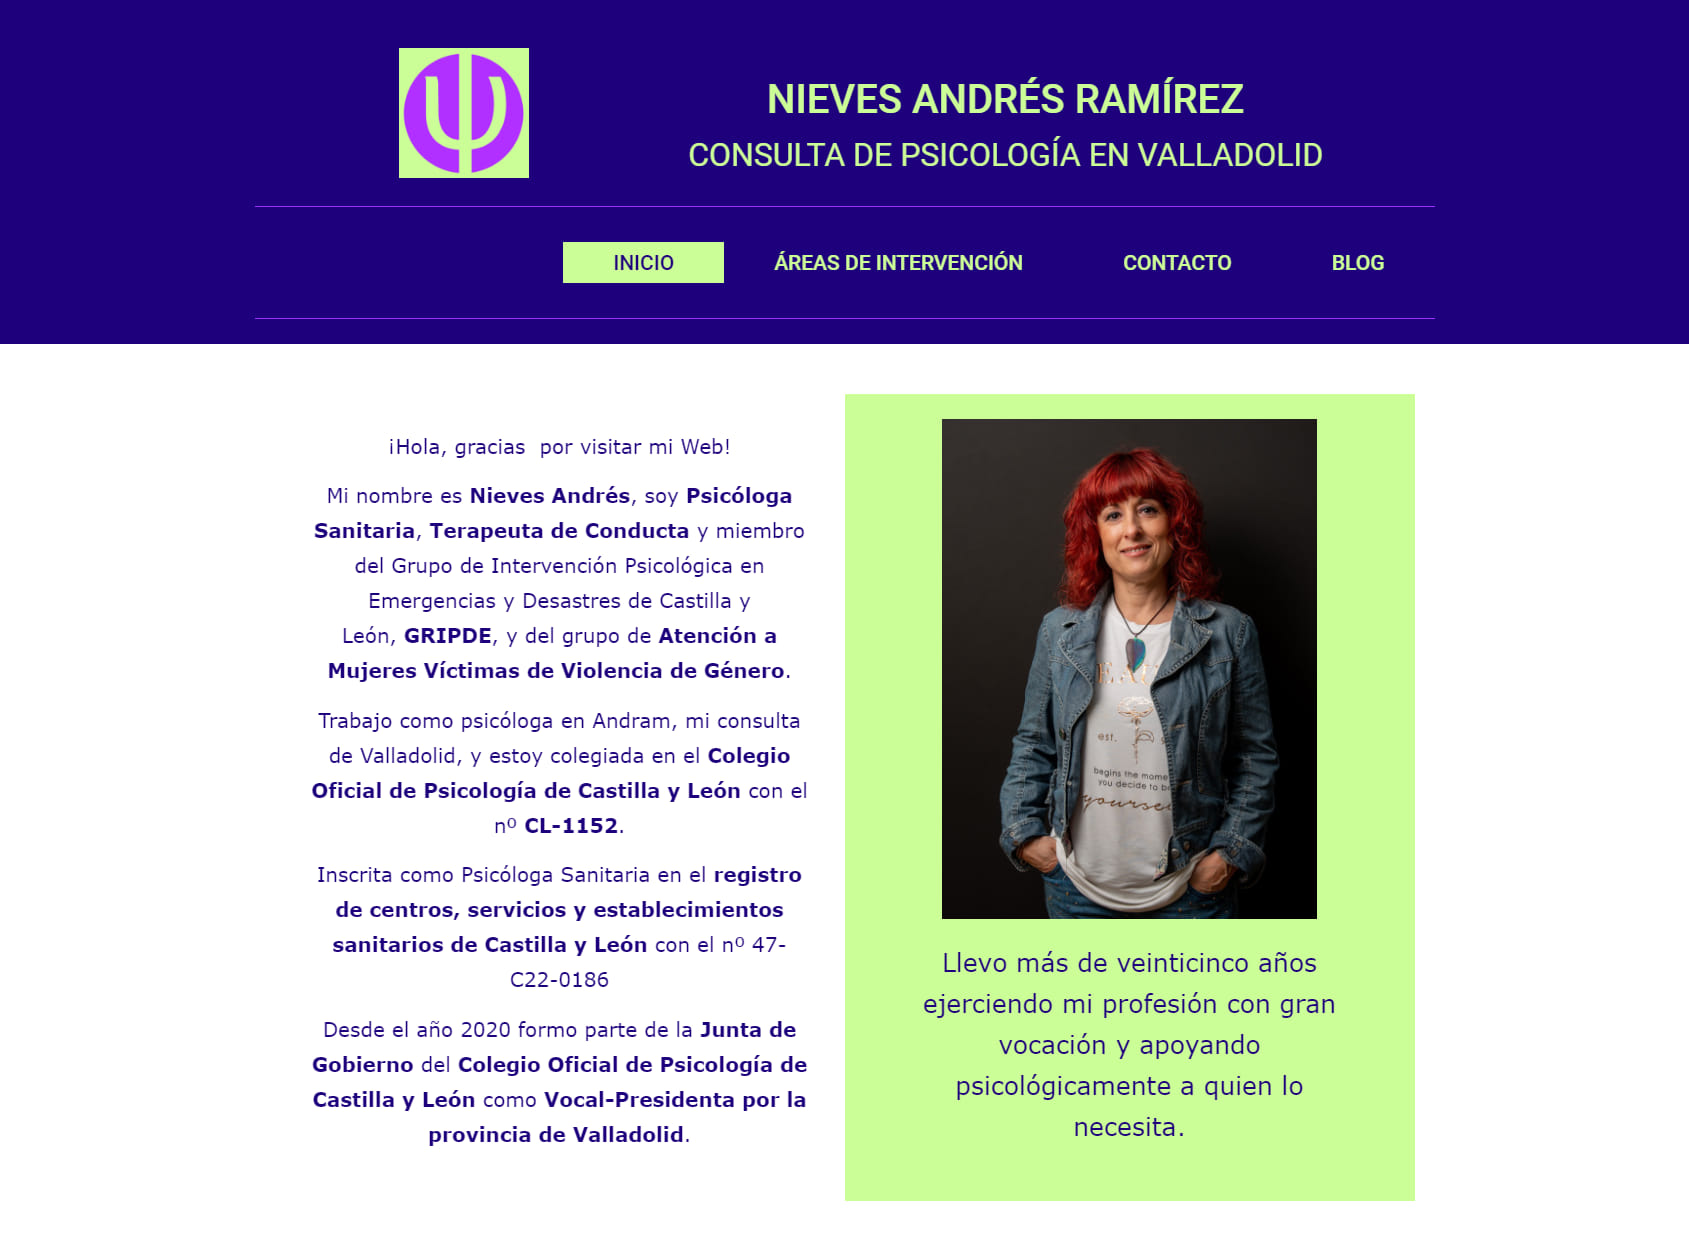 Consulta de Psicología Nieves Andrés